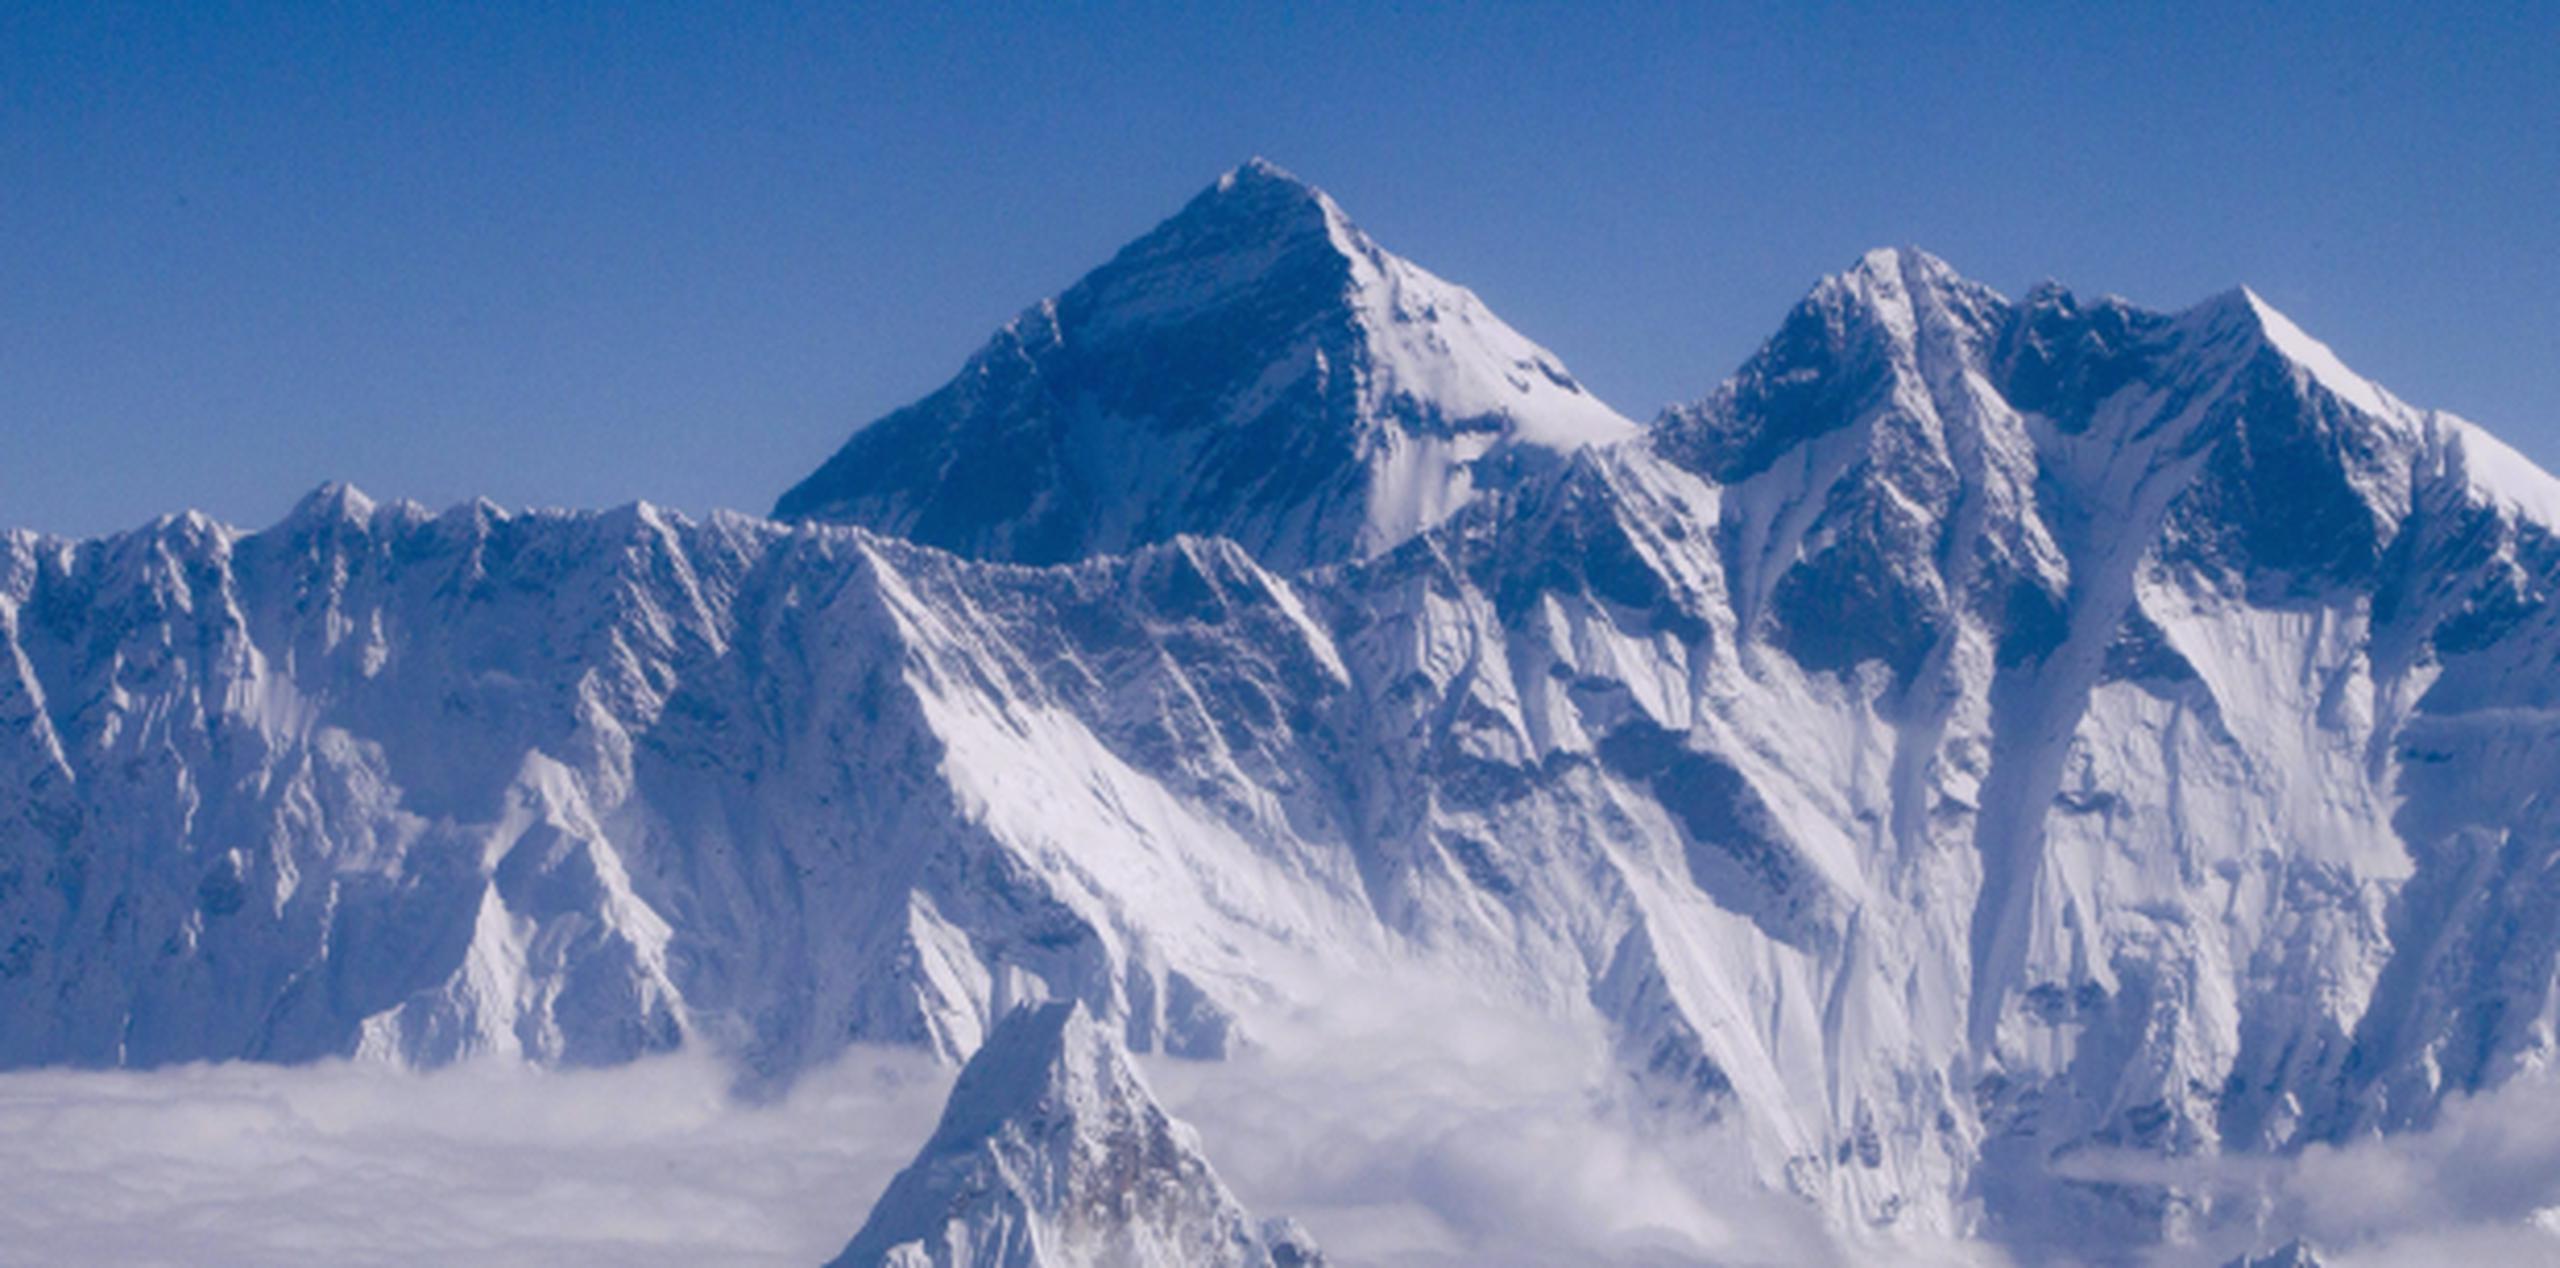 Los permisos para escalar el Everest cuestan normalmente 11,000 dólares. (EFE / Narendra Shrestha)